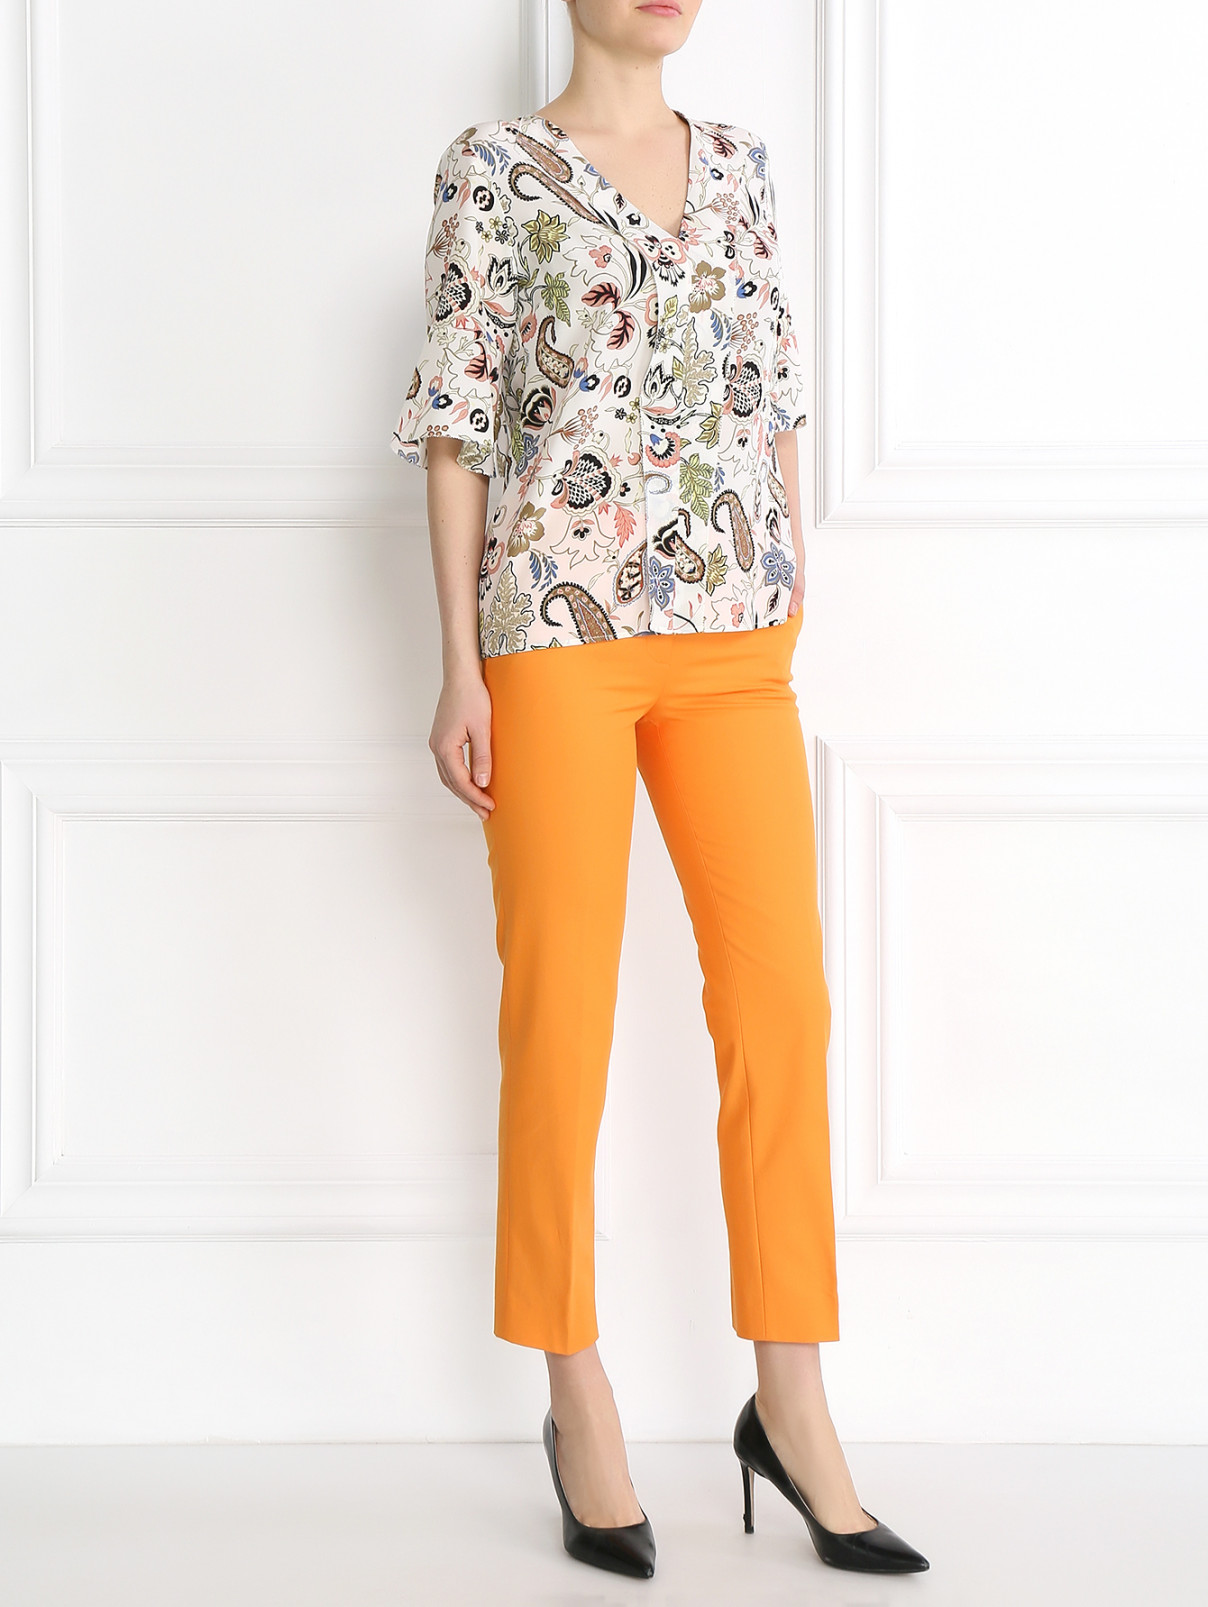 Укороченные брюки из хлопка Moschino Cheap&Chic  –  Модель Общий вид  – Цвет:  Оранжевый